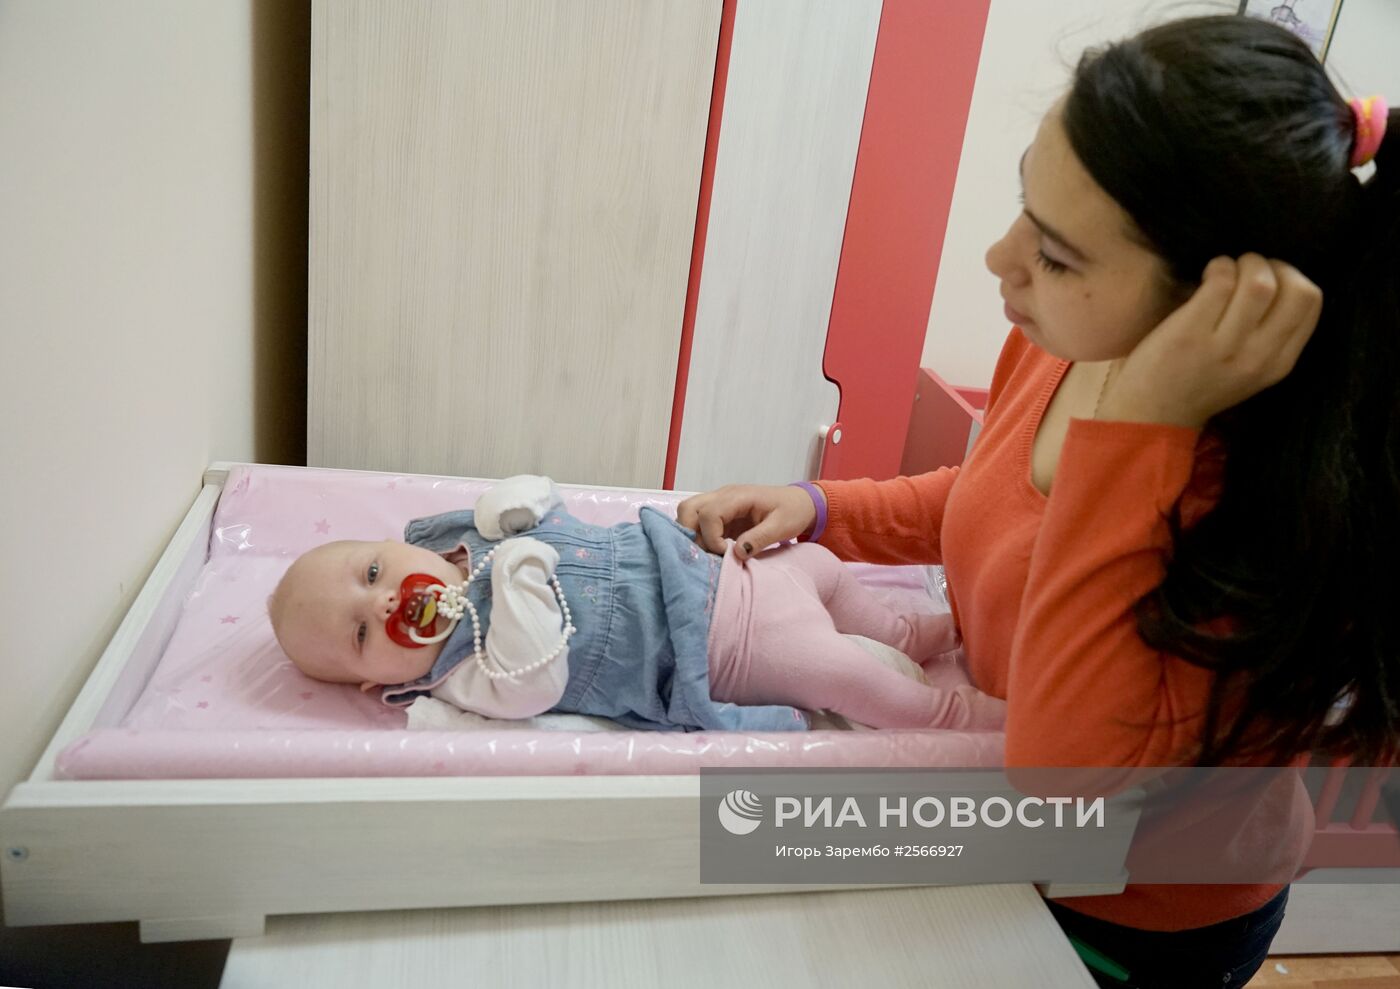 Центр помощи детям "Надежда" в Калининграде